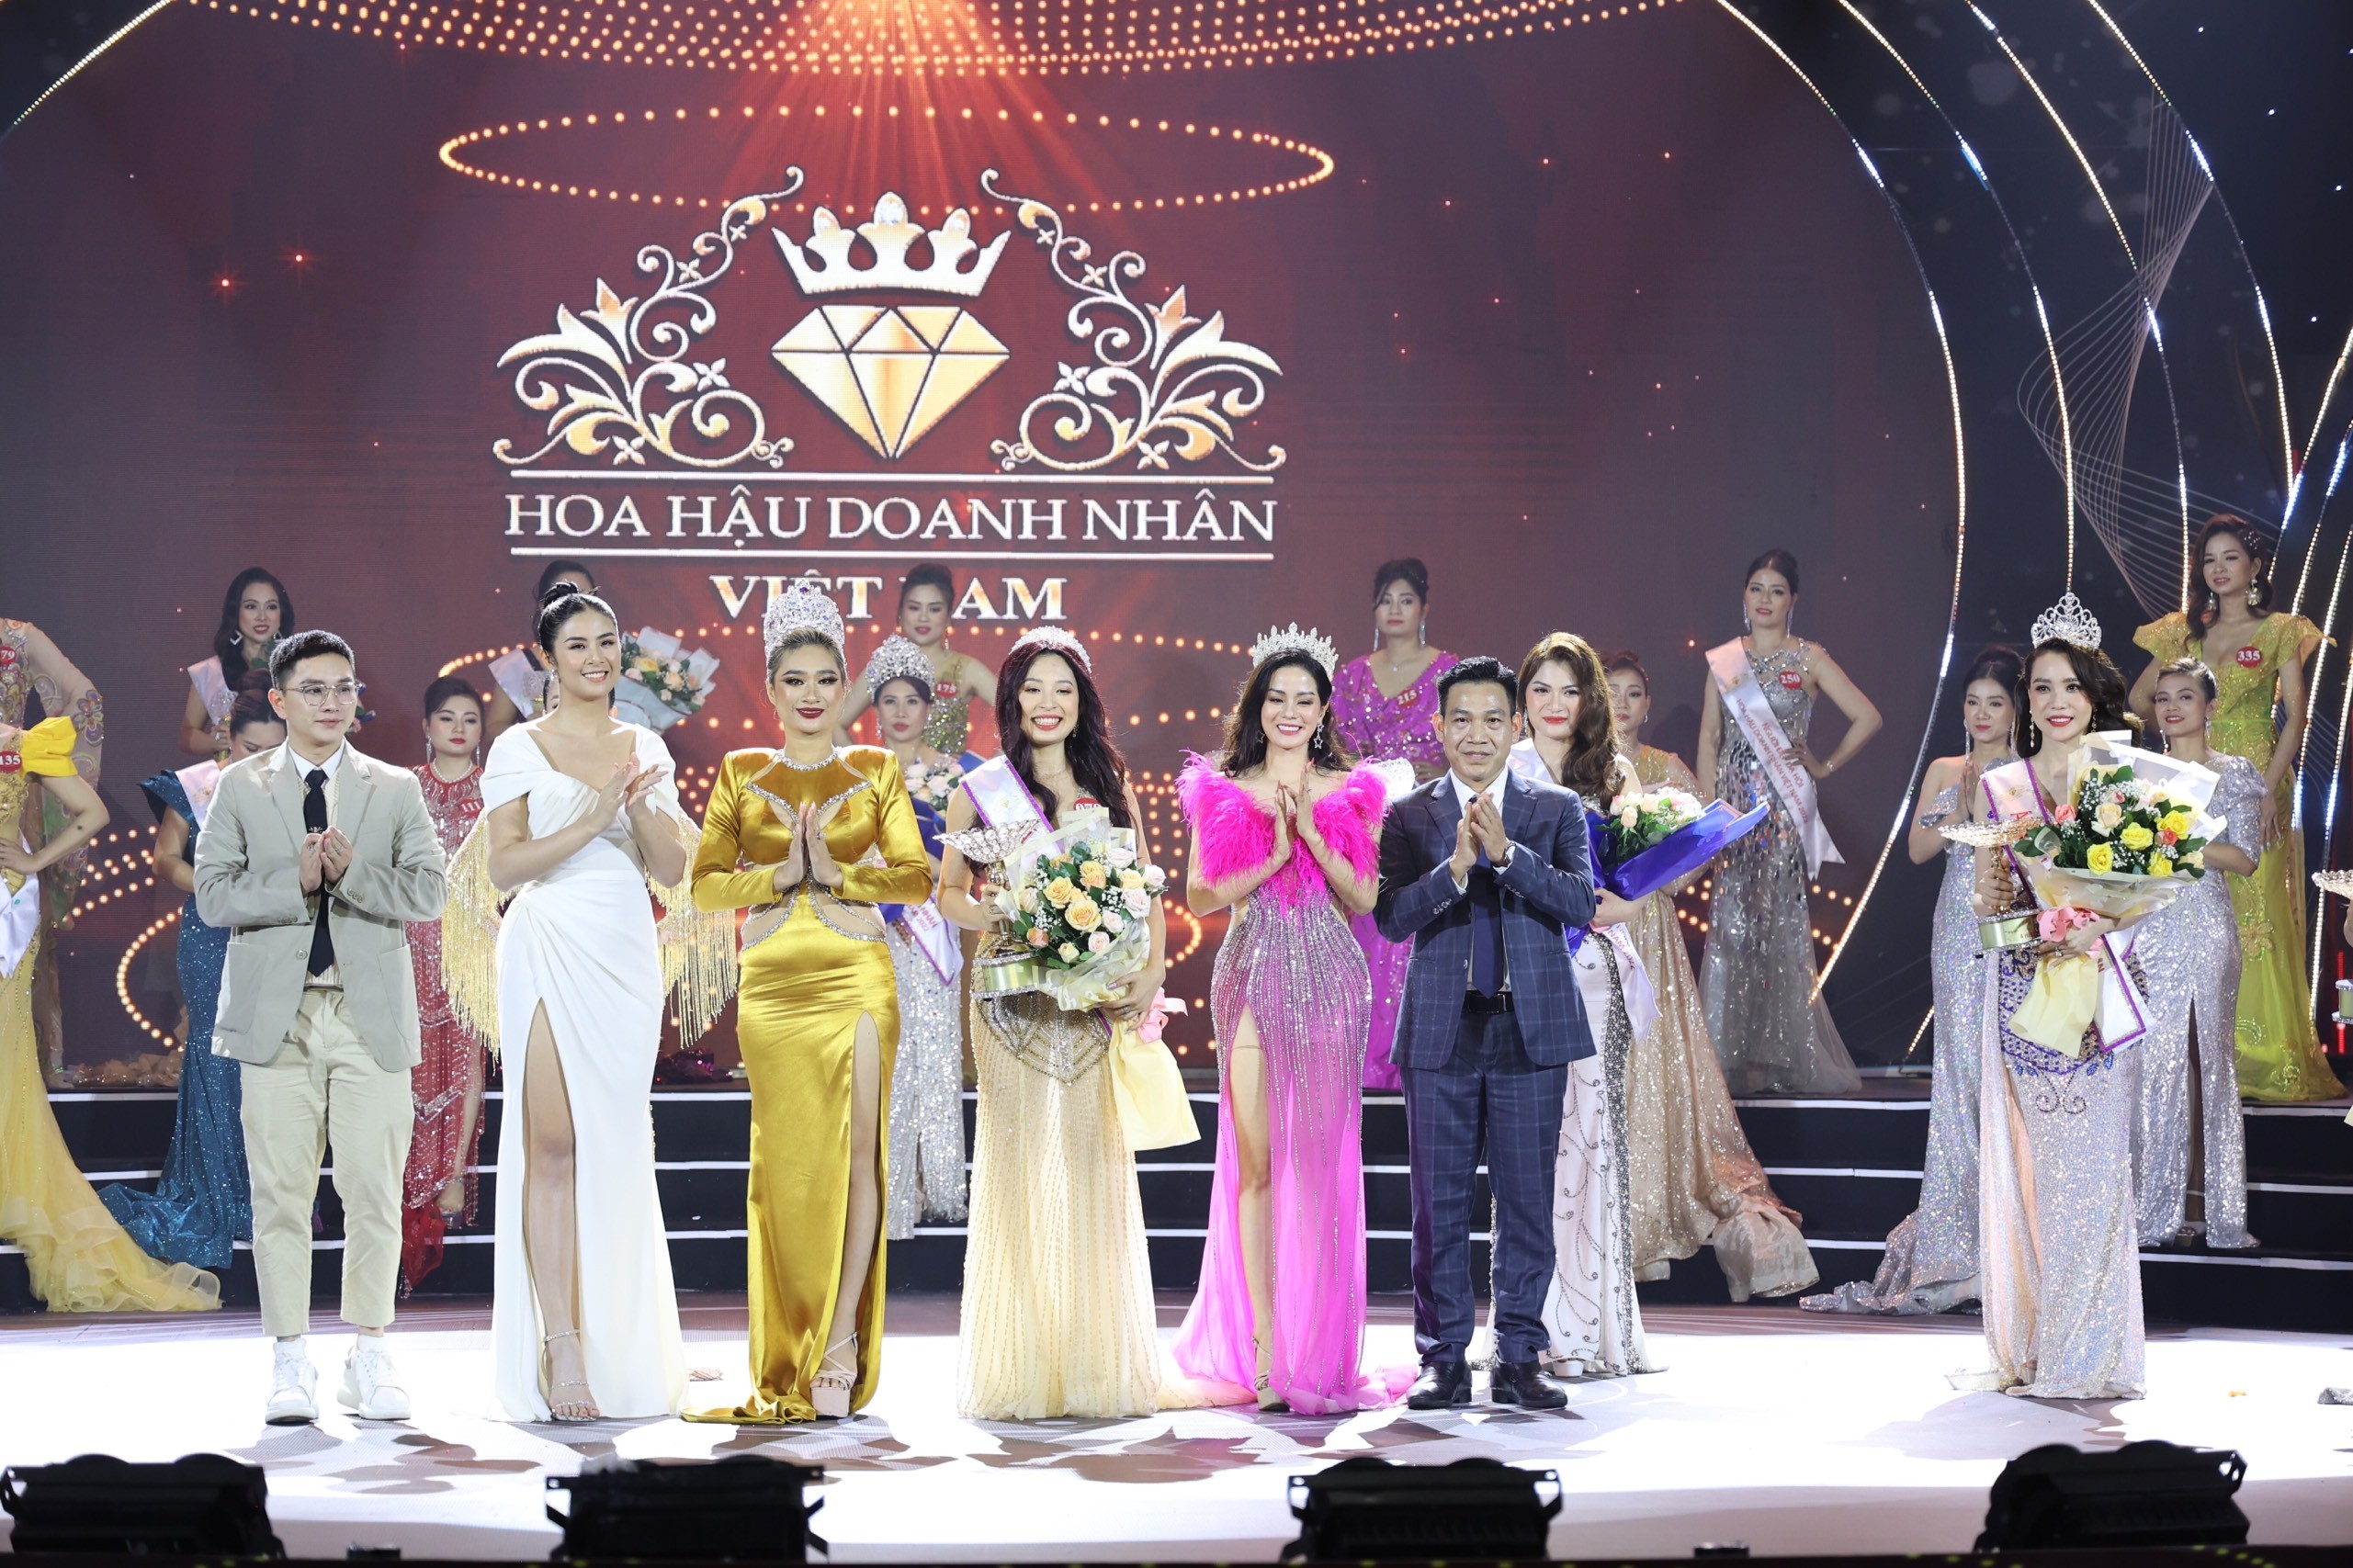 Doanh nhân Triệu Mai Thanh Thủy đạt danh hiệu Á hậu 2 cuộc thi Hoa hậu Doanh nhân Việt Nam 2022